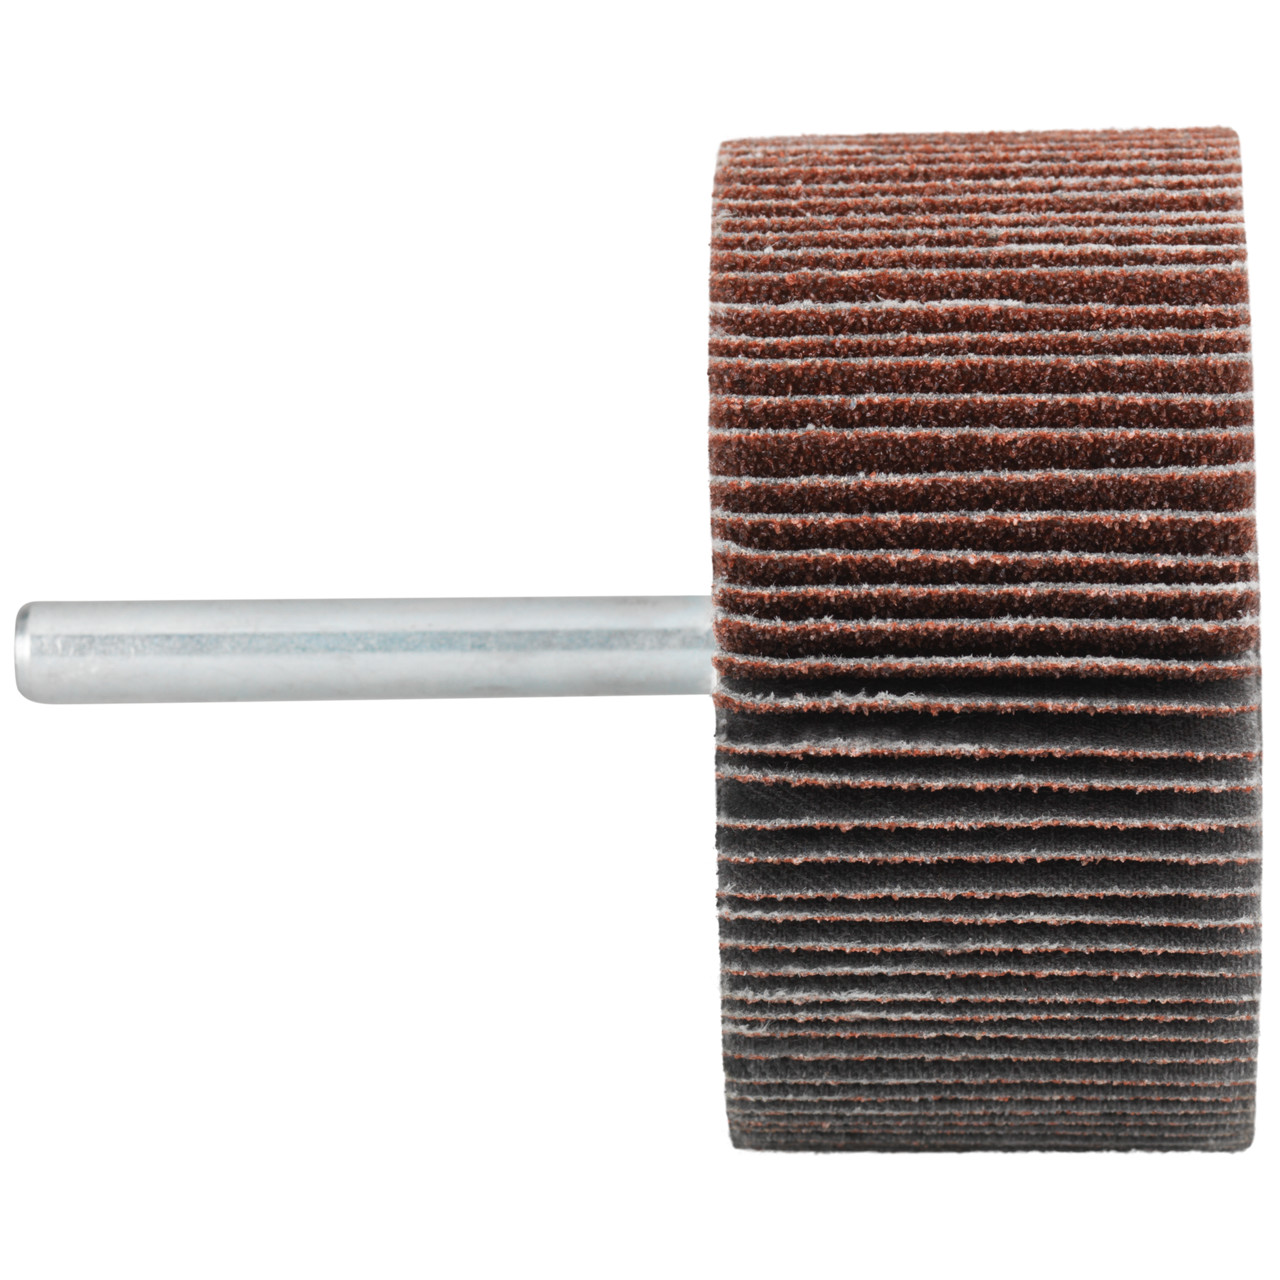 Tyrolit A-P01 C X Pennen DxD 50x20 Voor staal, roestvast staal en non-ferrometalen, P60, vorm: 52LA, Art. 816931